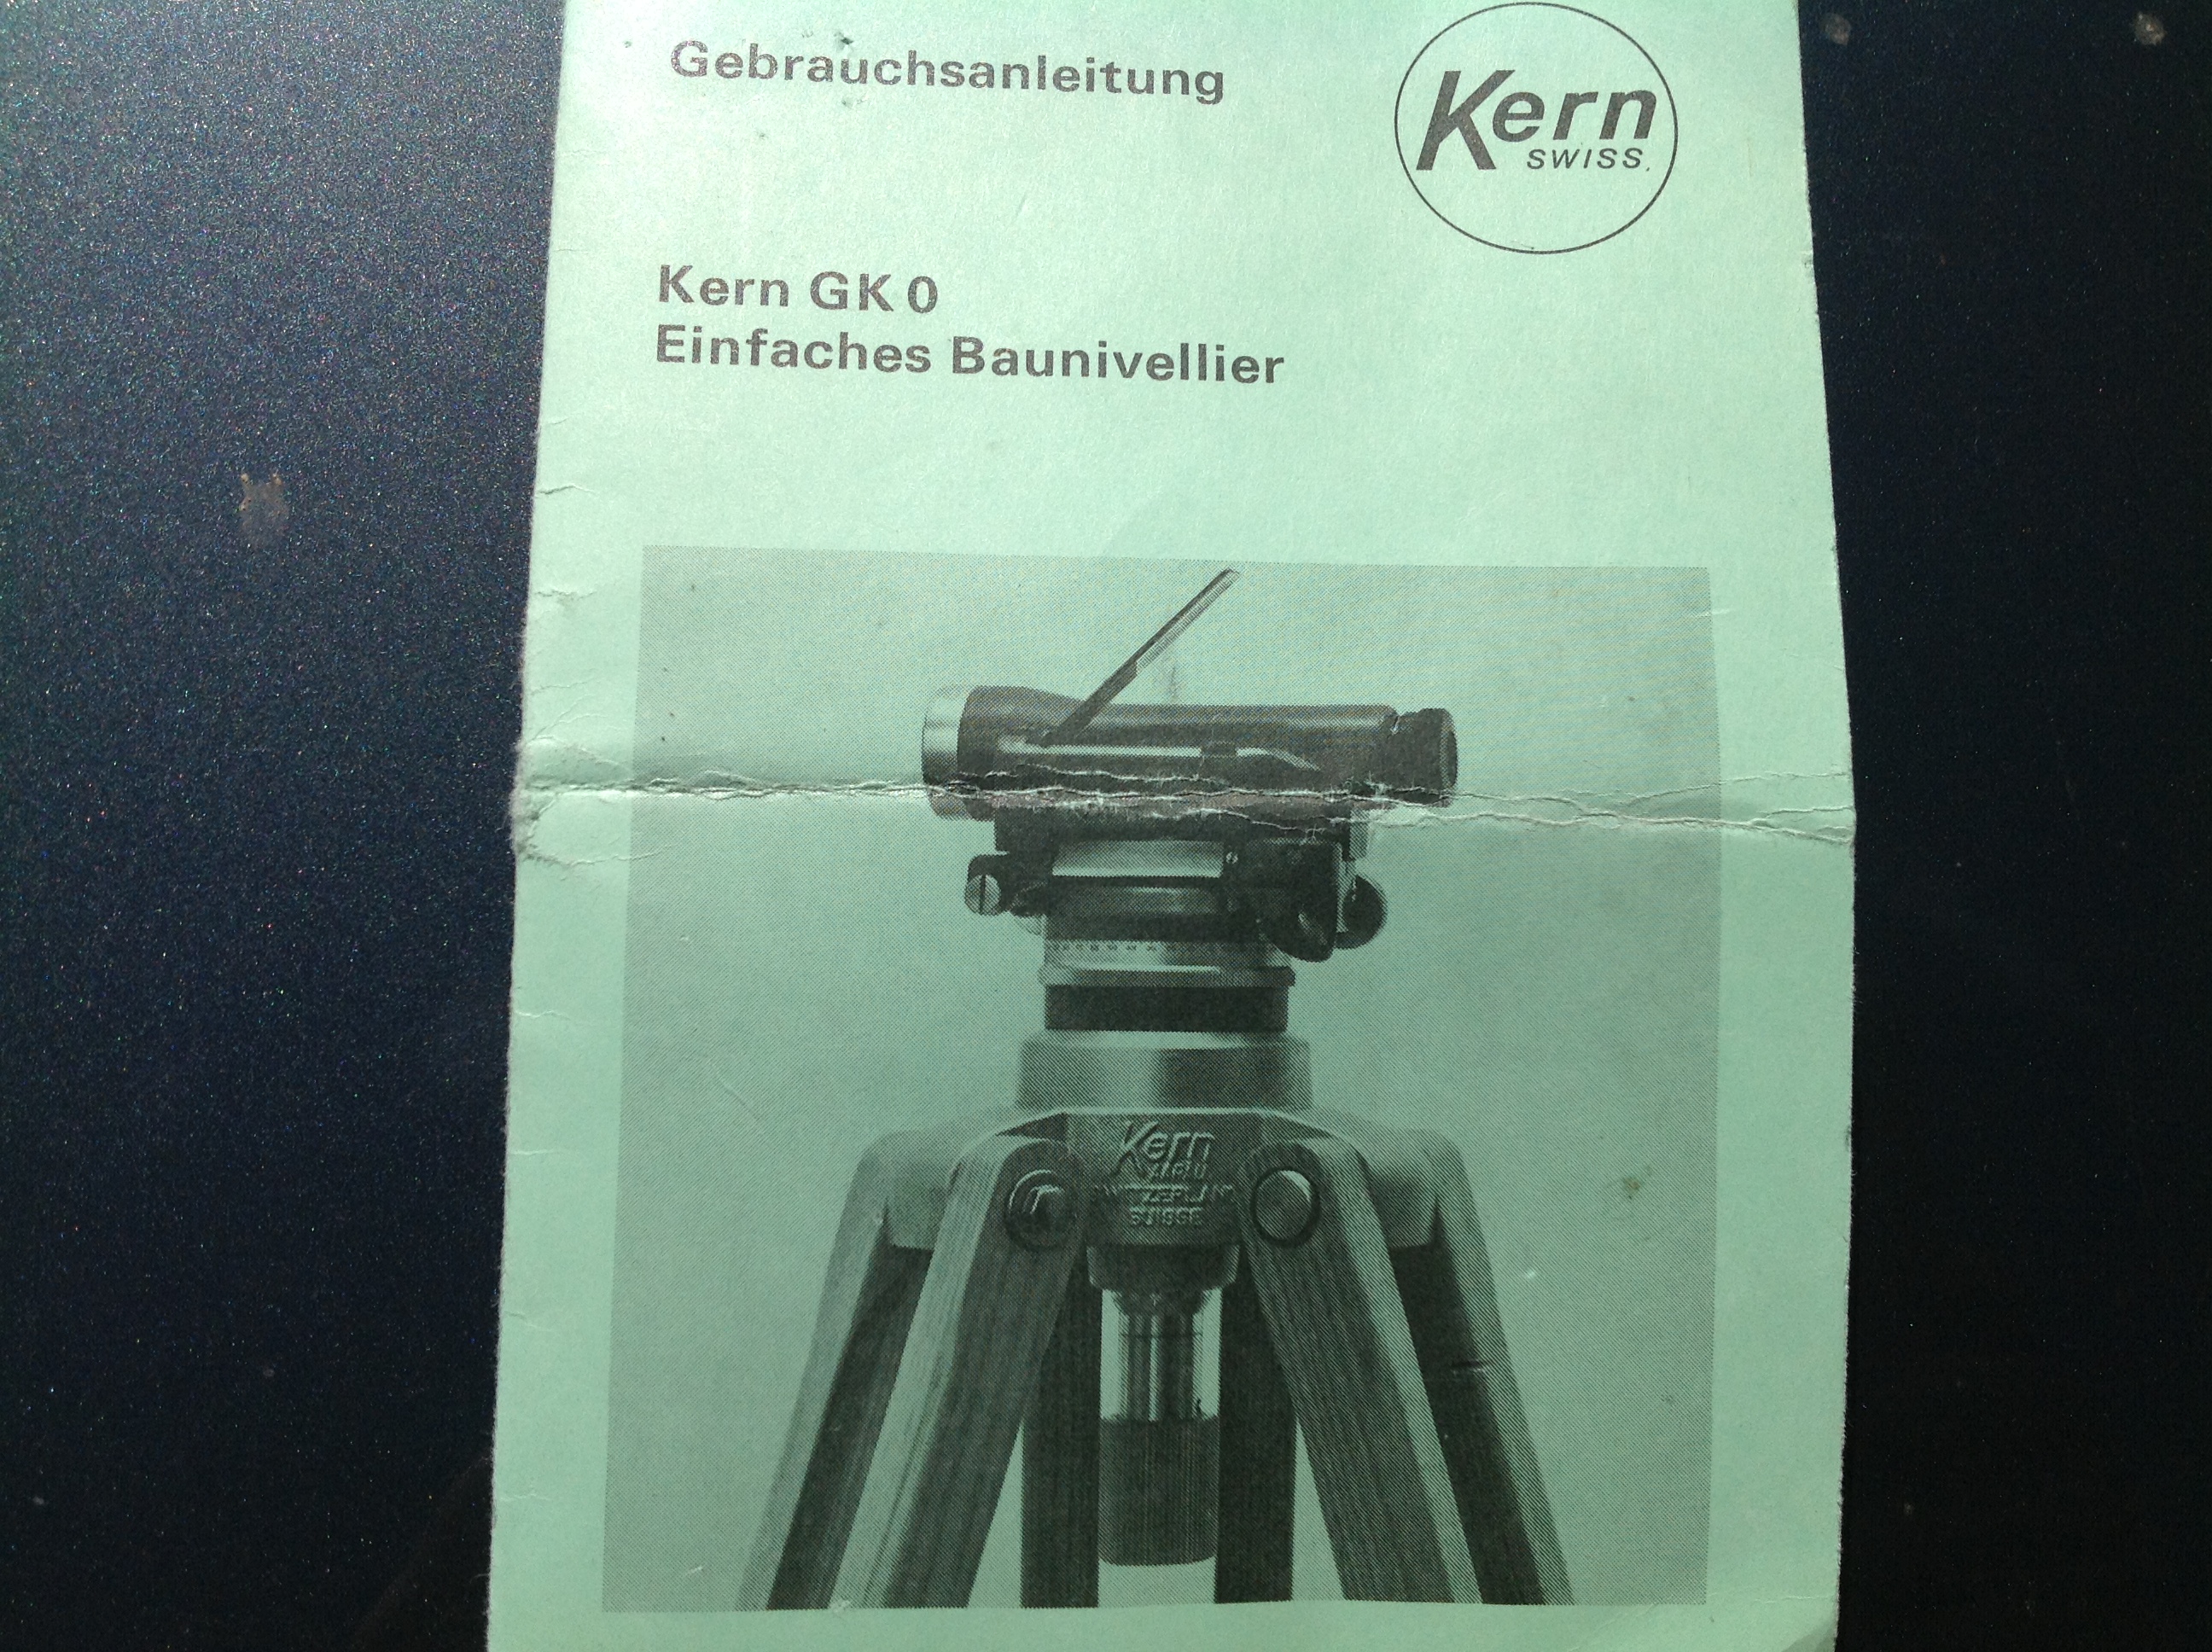 Kompensierungsausstattung für Luftfahrzeug BO-105 Nivelliergerät GkO Kern Aarau